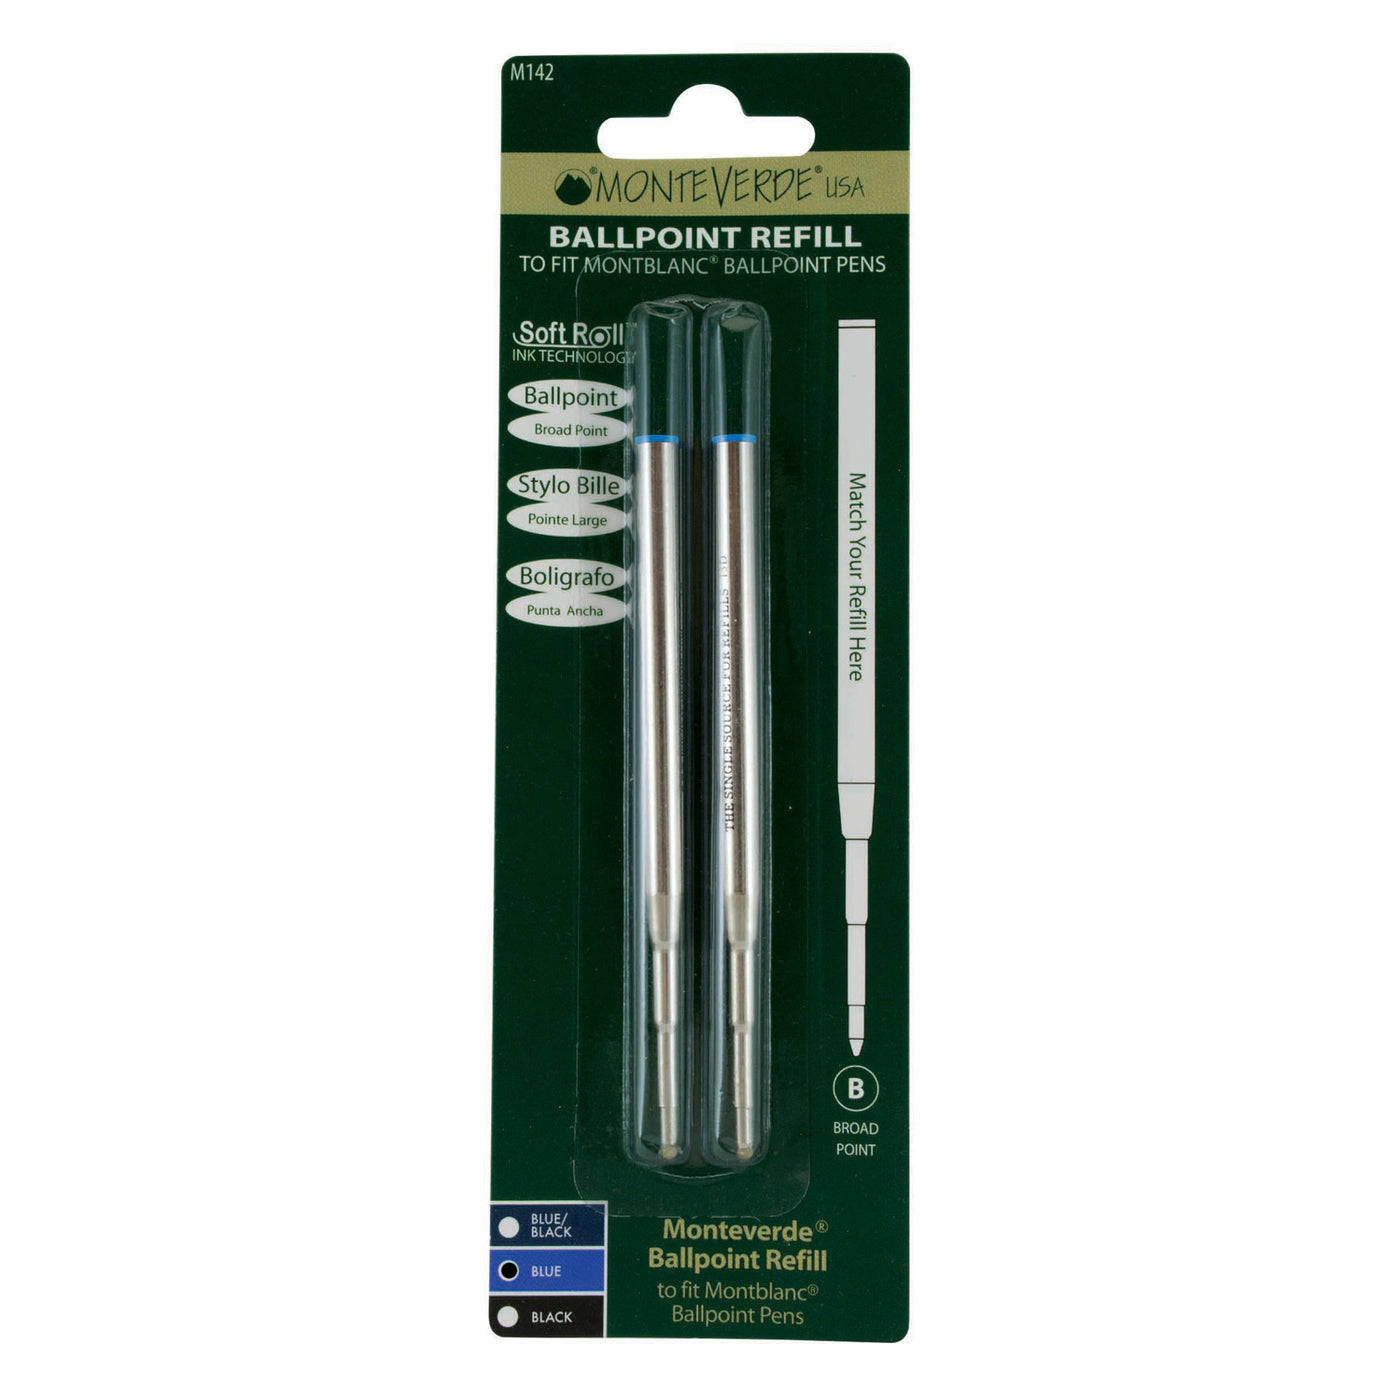 Monteverde Ball Pen Refill for Montblanc - Broad - Blue - Pack of 2 4